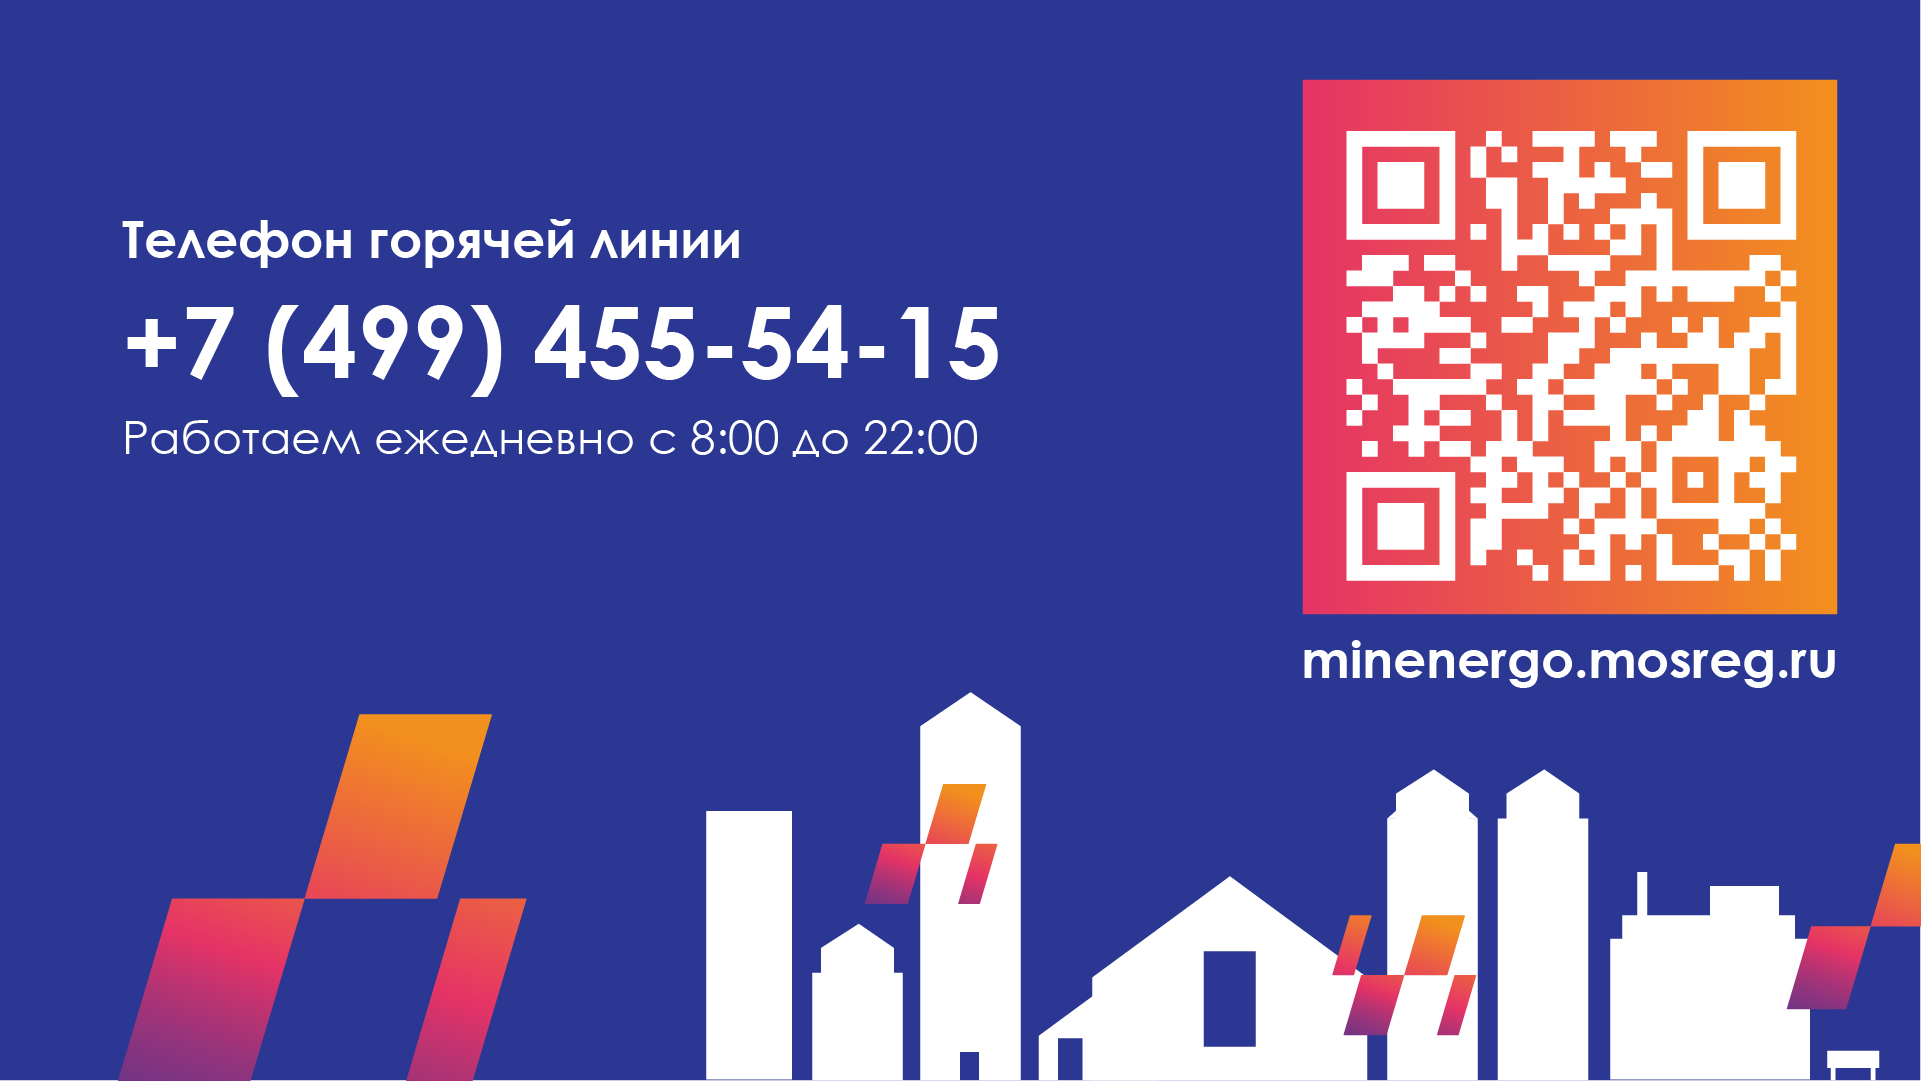 Министерство энергетики Московской области запустило горячую линию 8 (499) 455-54-15